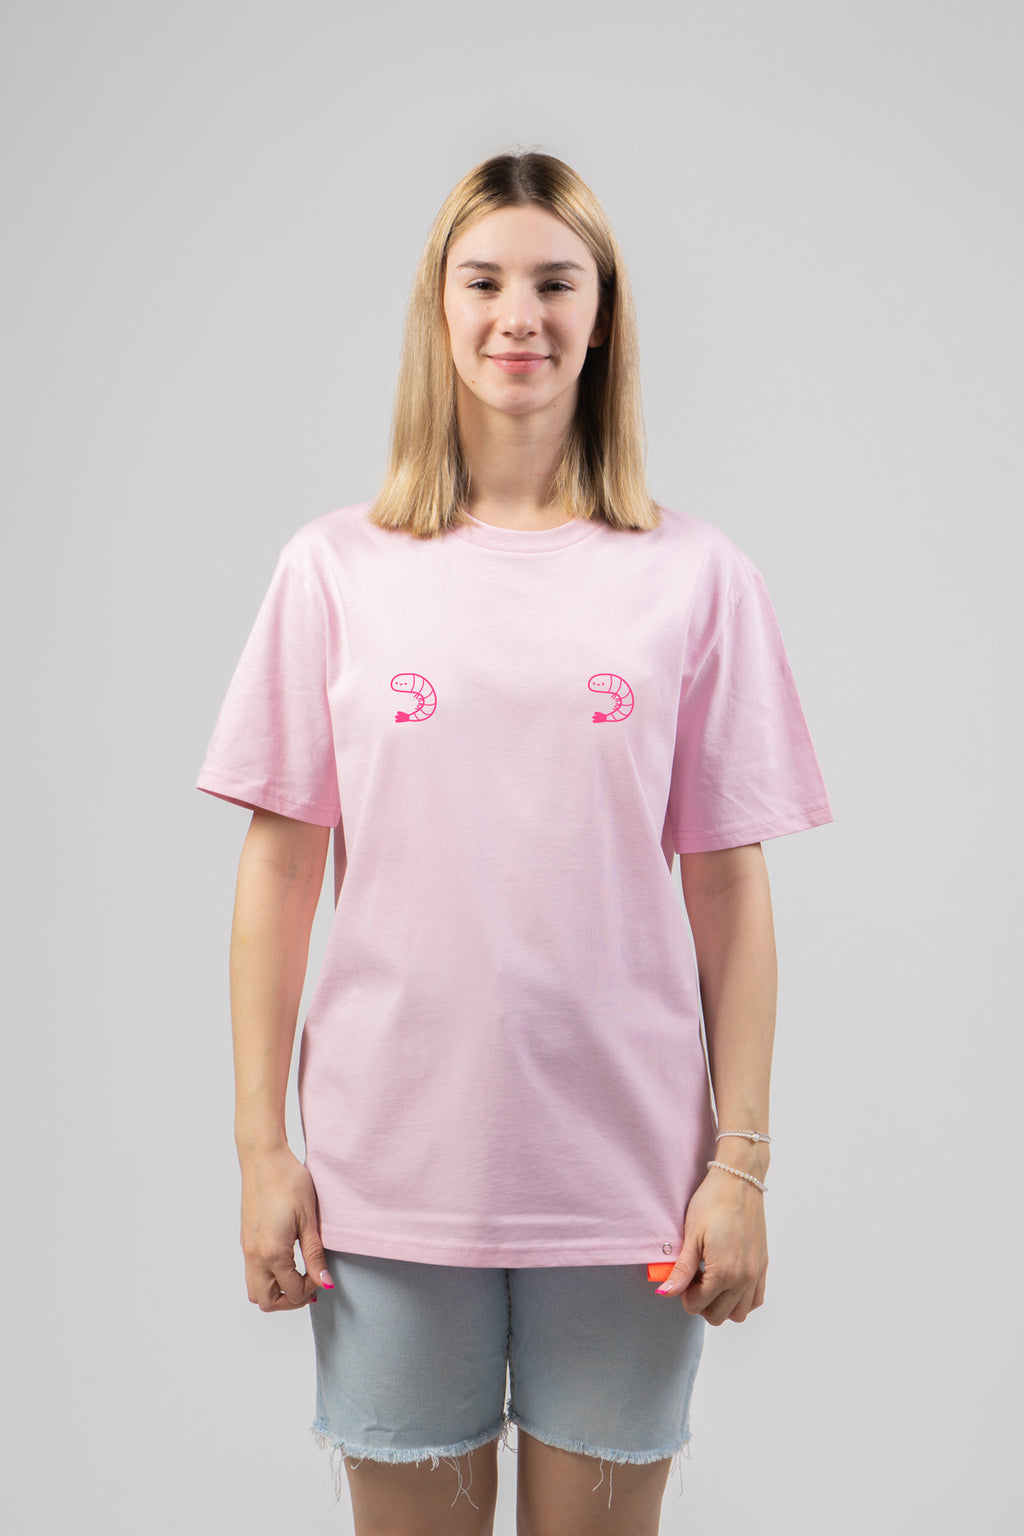 Unisex Tričko KREVETY Ružové